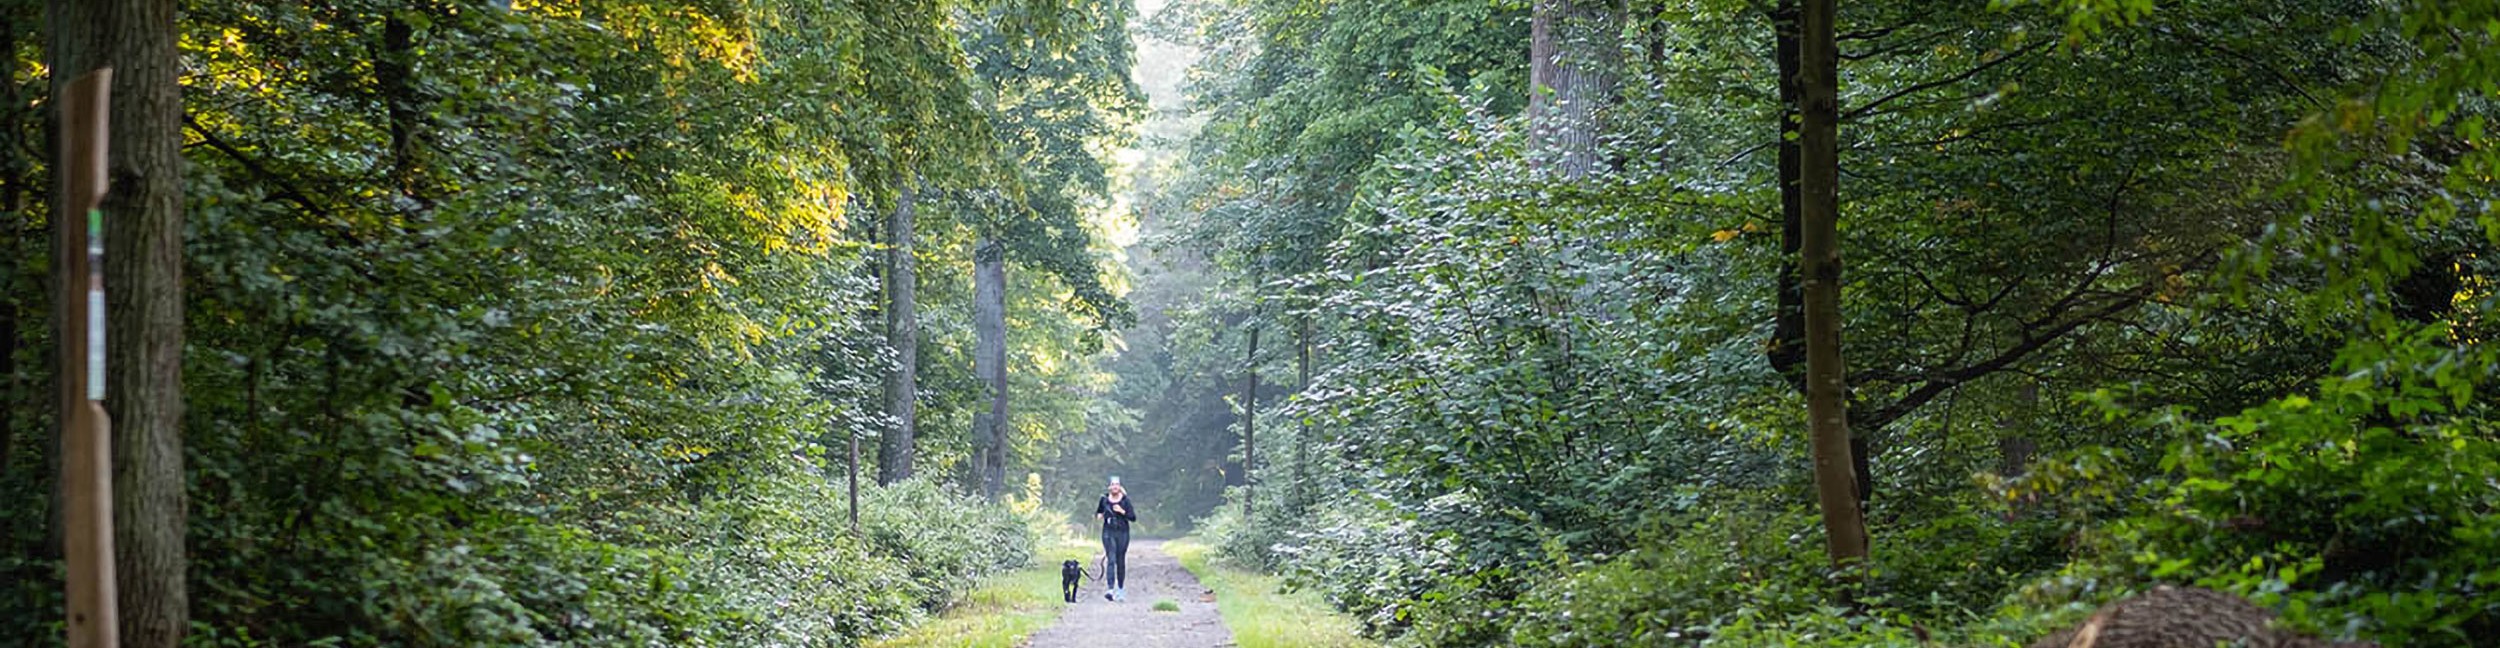 Öitgheimer Wald mit Spaziergängerin und Hund